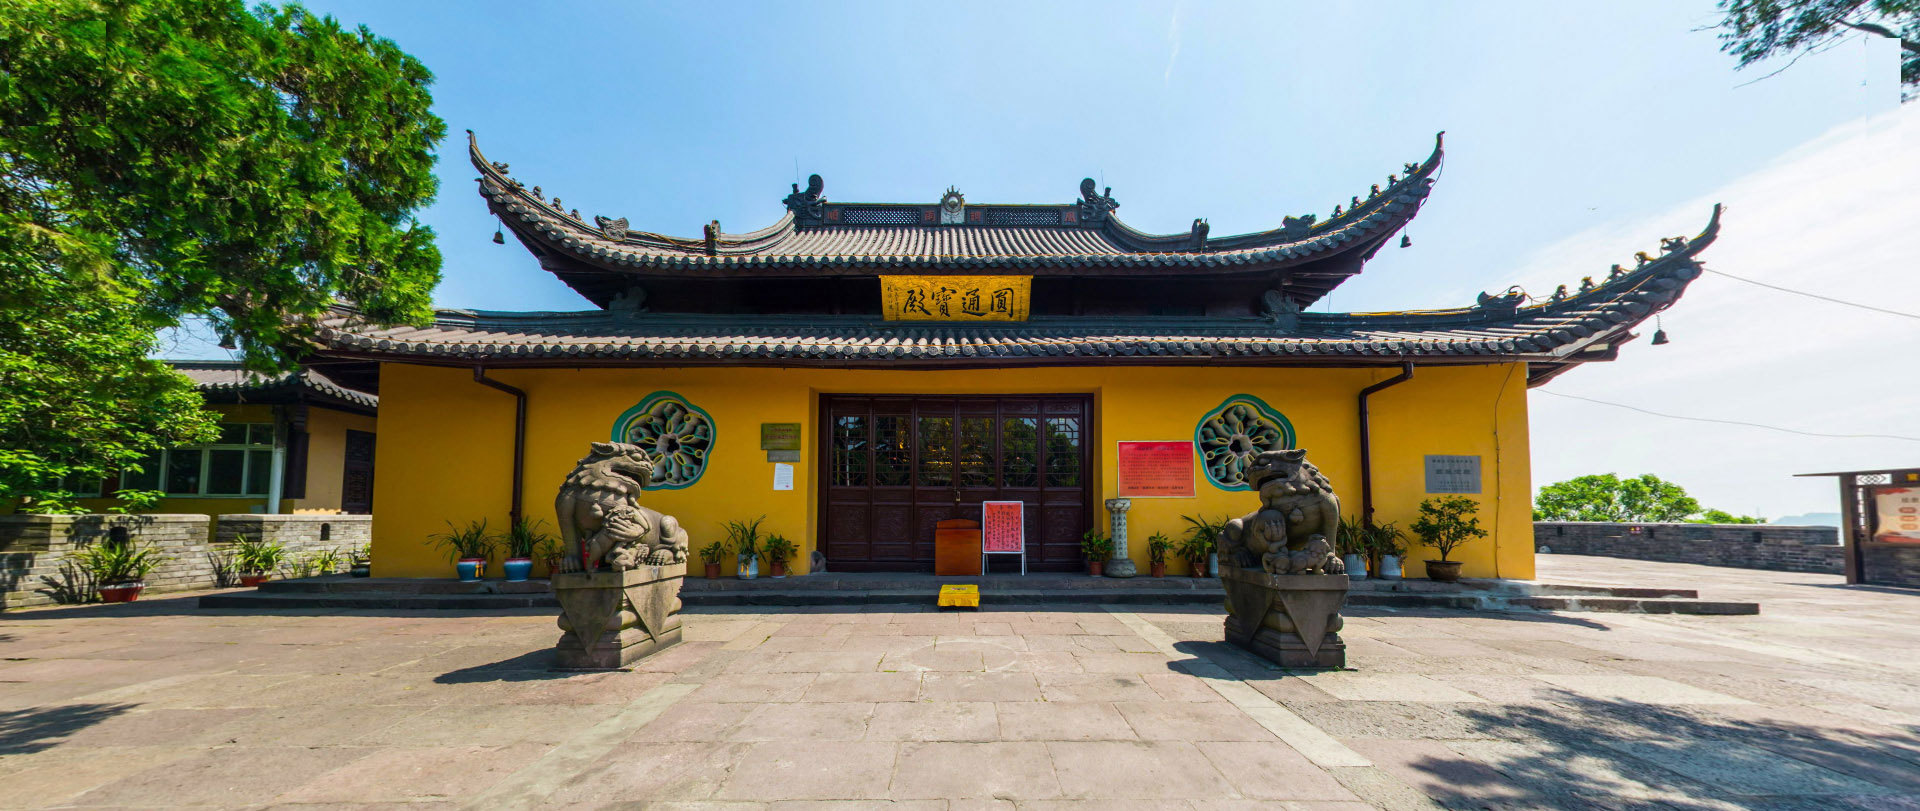 Yuantong Palace